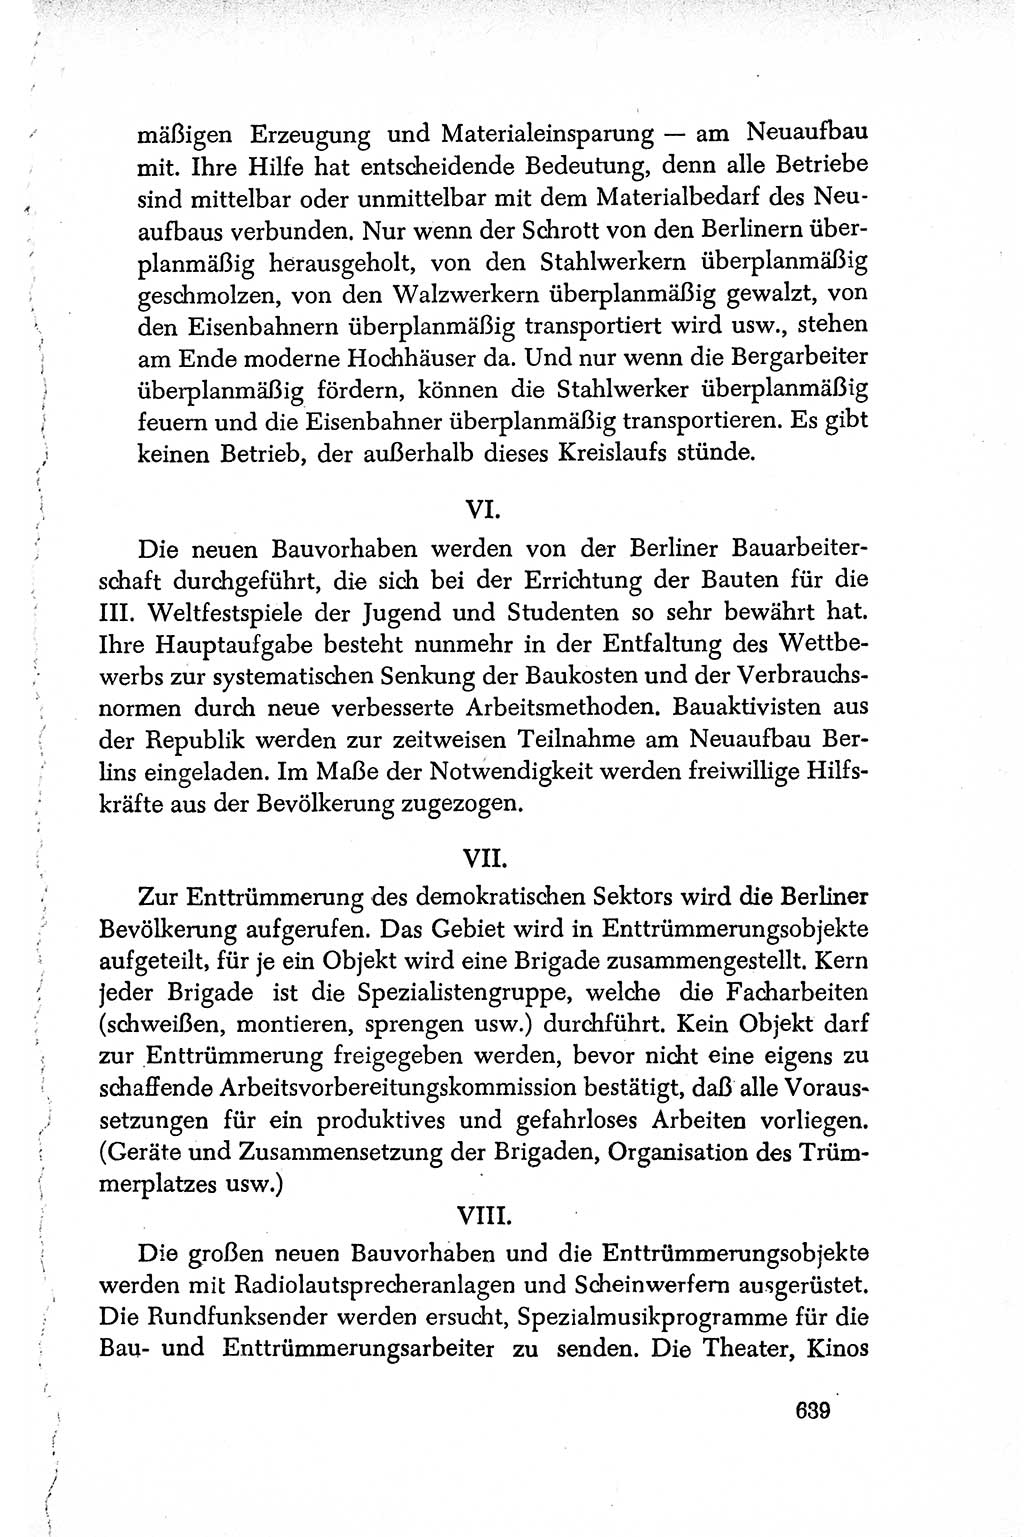 Dokumente der Sozialistischen Einheitspartei Deutschlands (SED) [Deutsche Demokratische Republik (DDR)] 1950-1952, Seite 639 (Dok. SED DDR 1950-1952, S. 639)